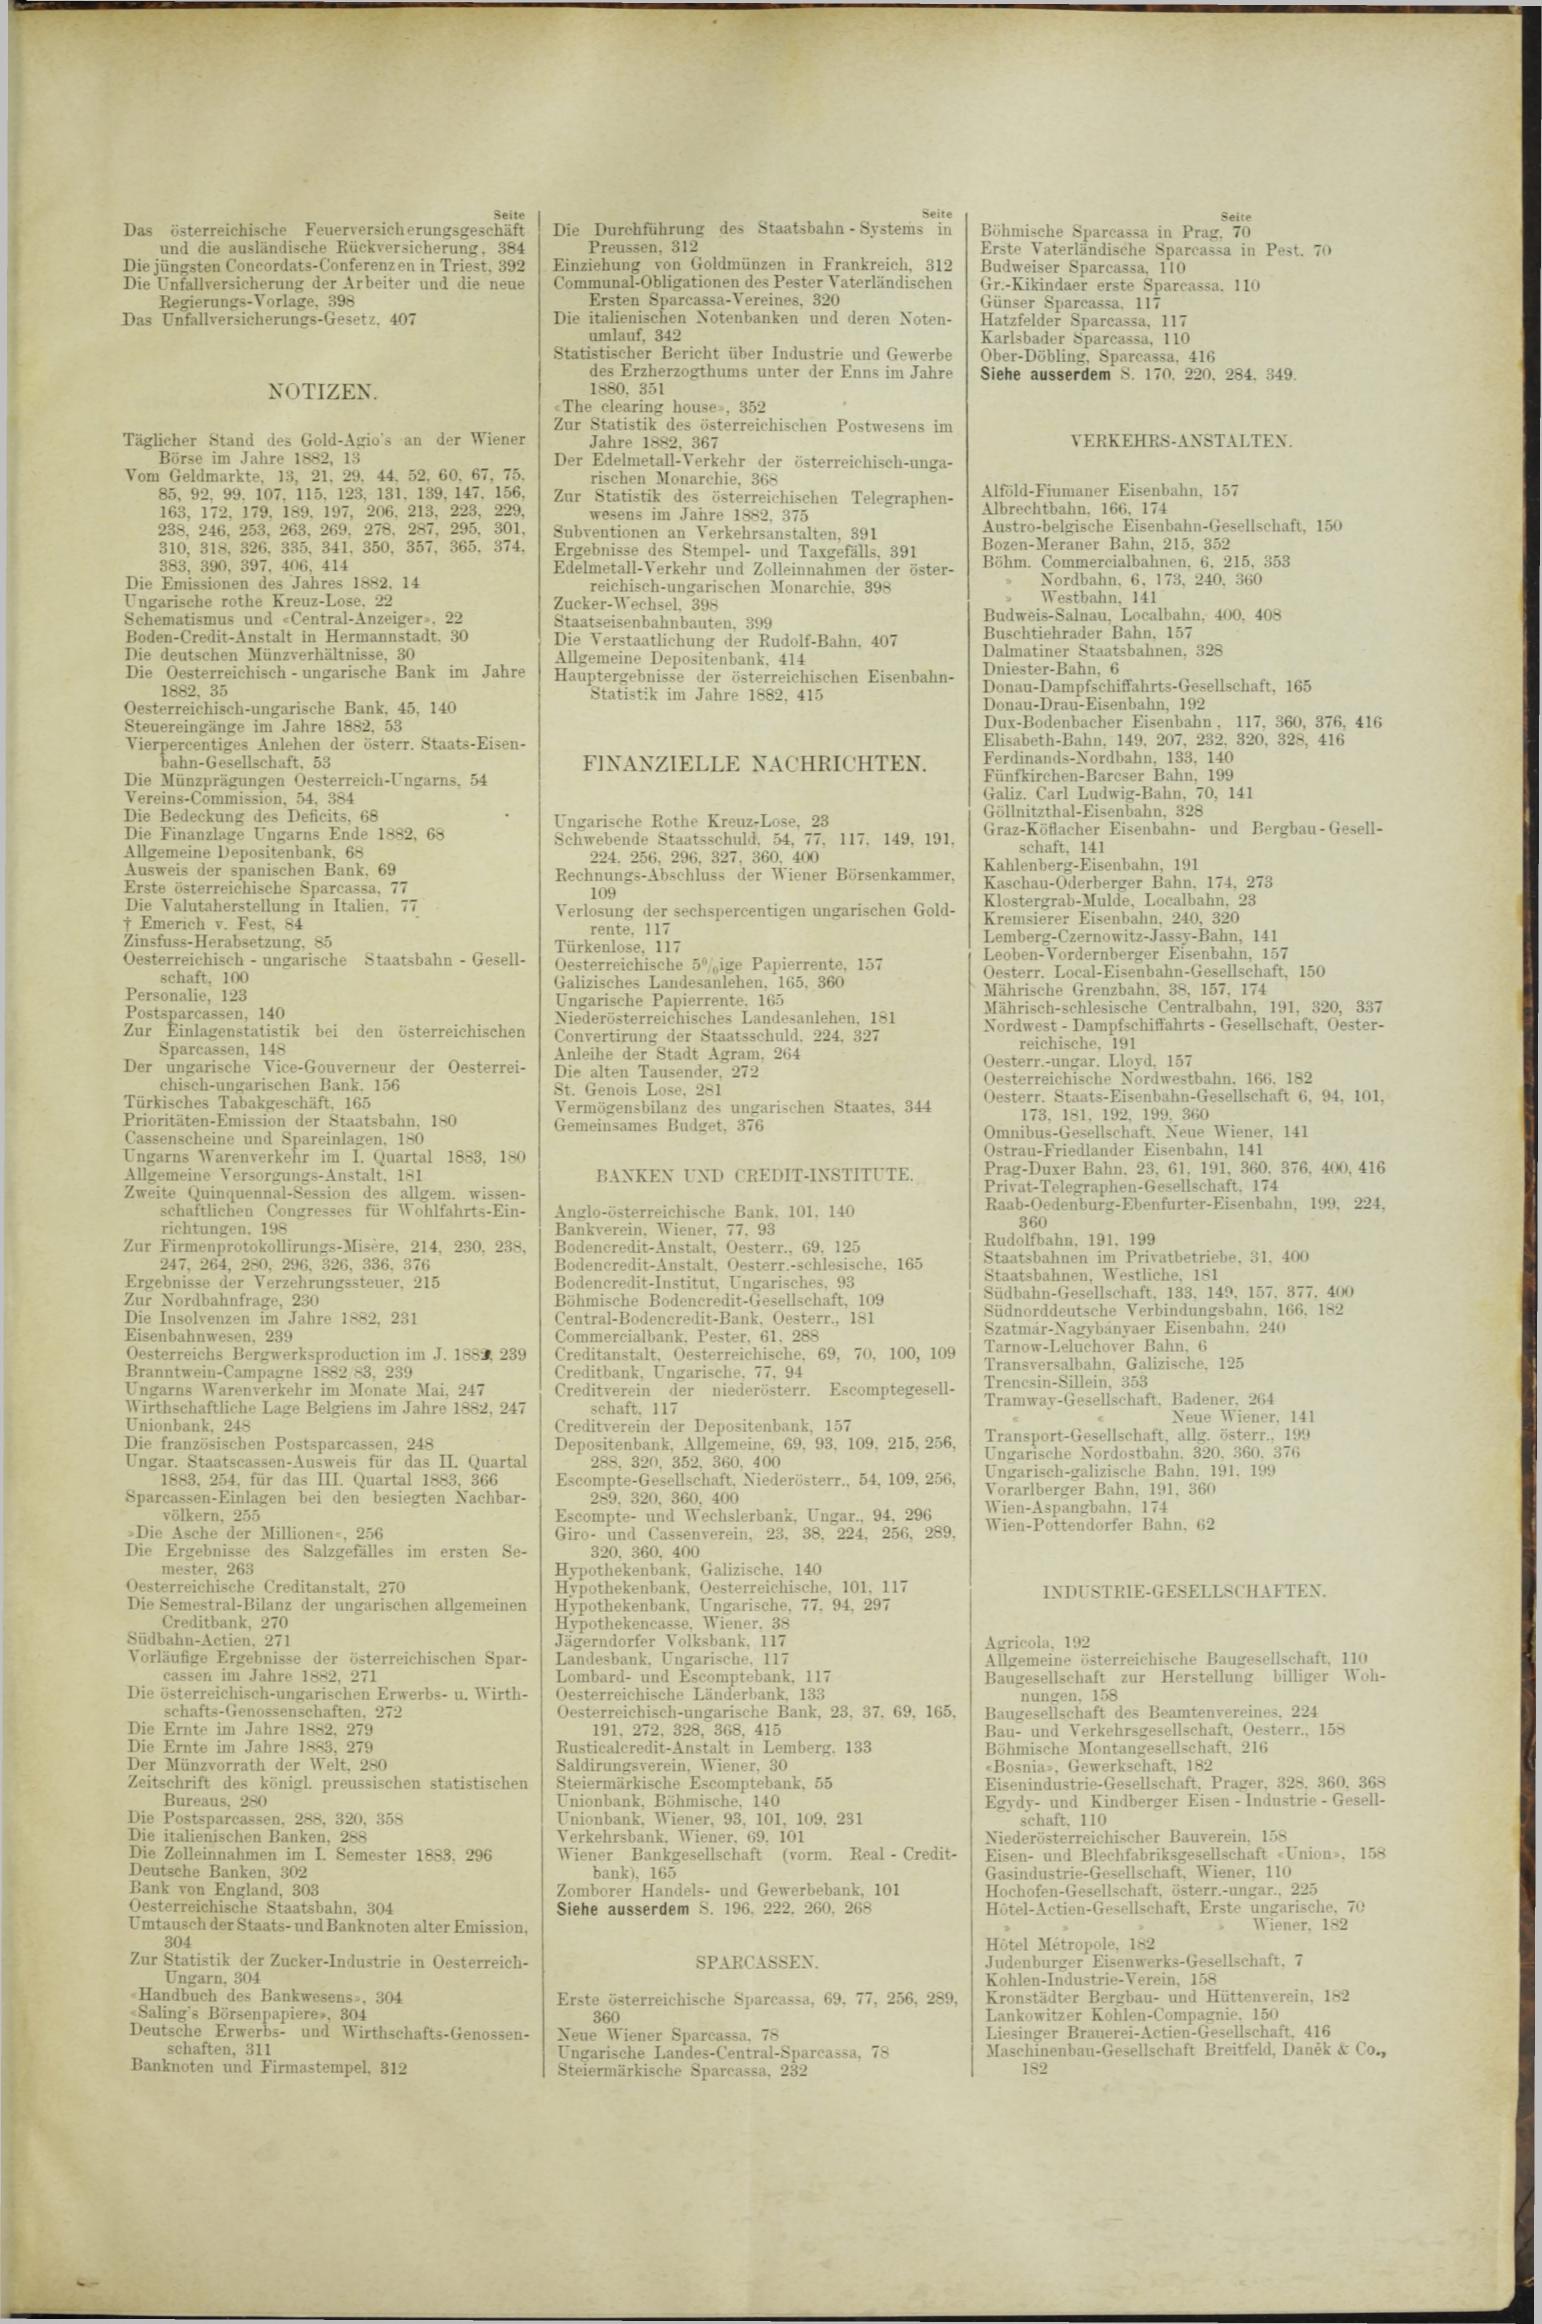 Der Tresor 31.05.1883 - Seite 11